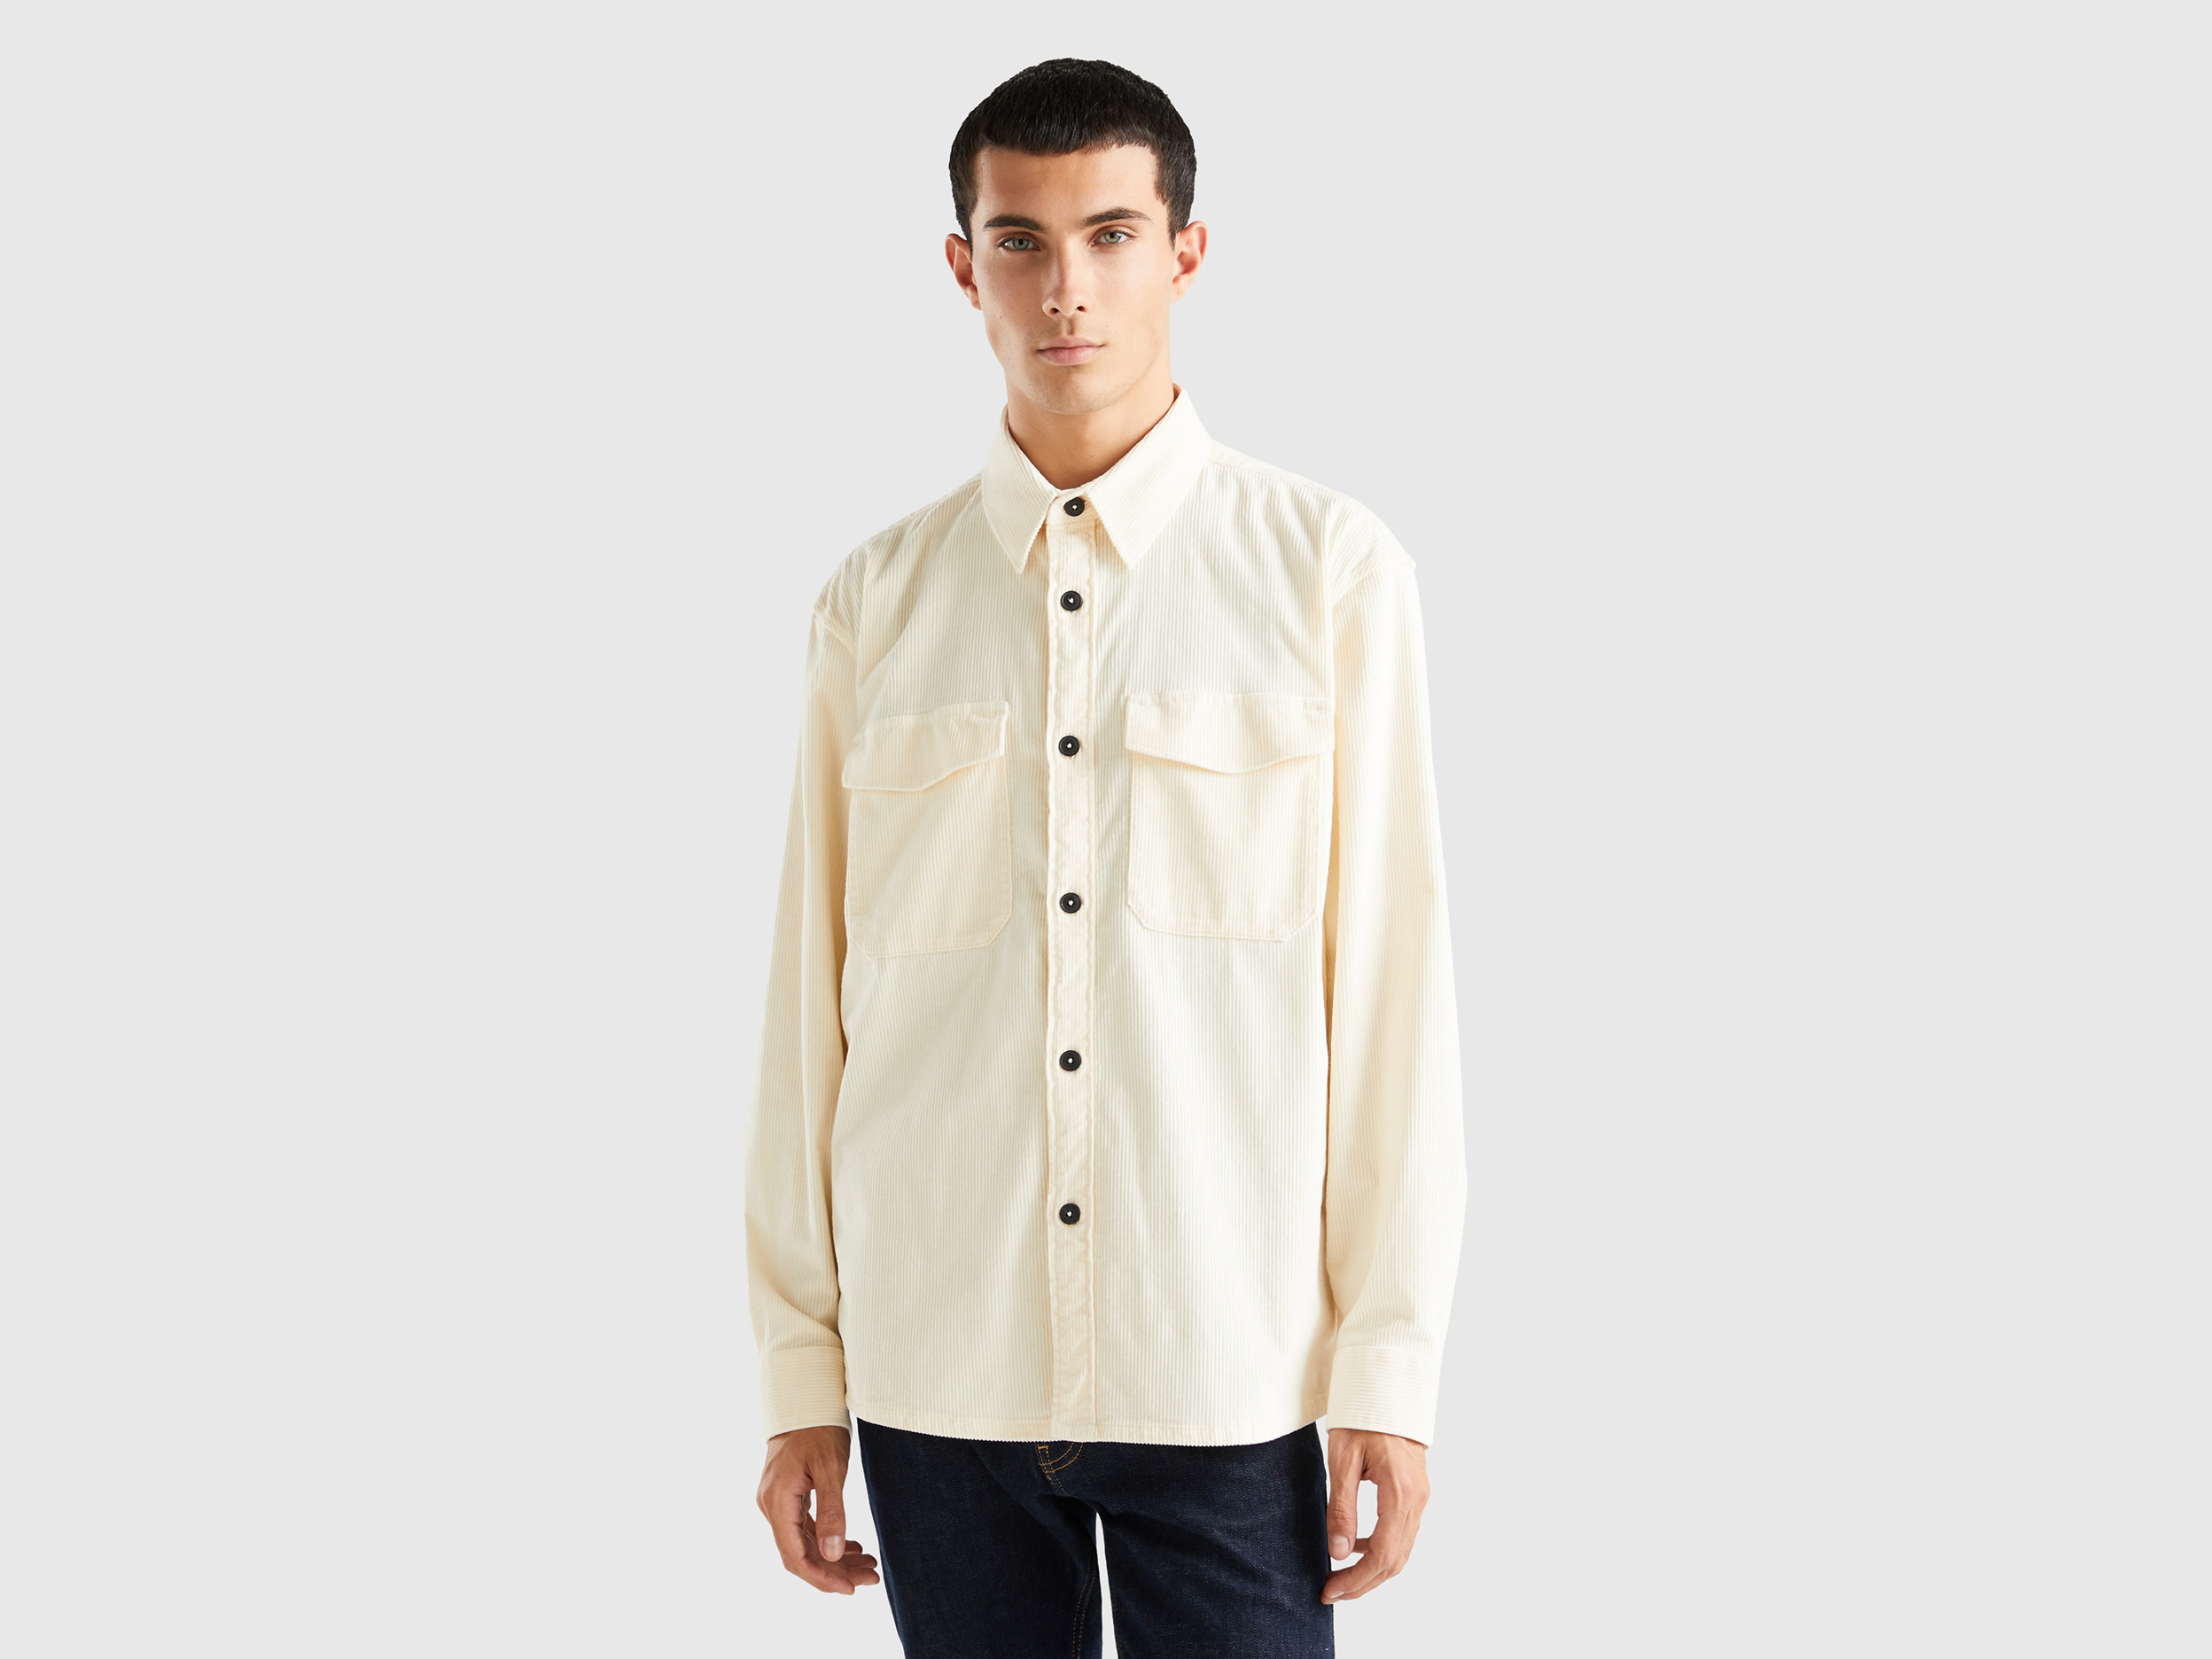 Benetton, Velvet Ribbed Shirt, size L, Creamy White, Men